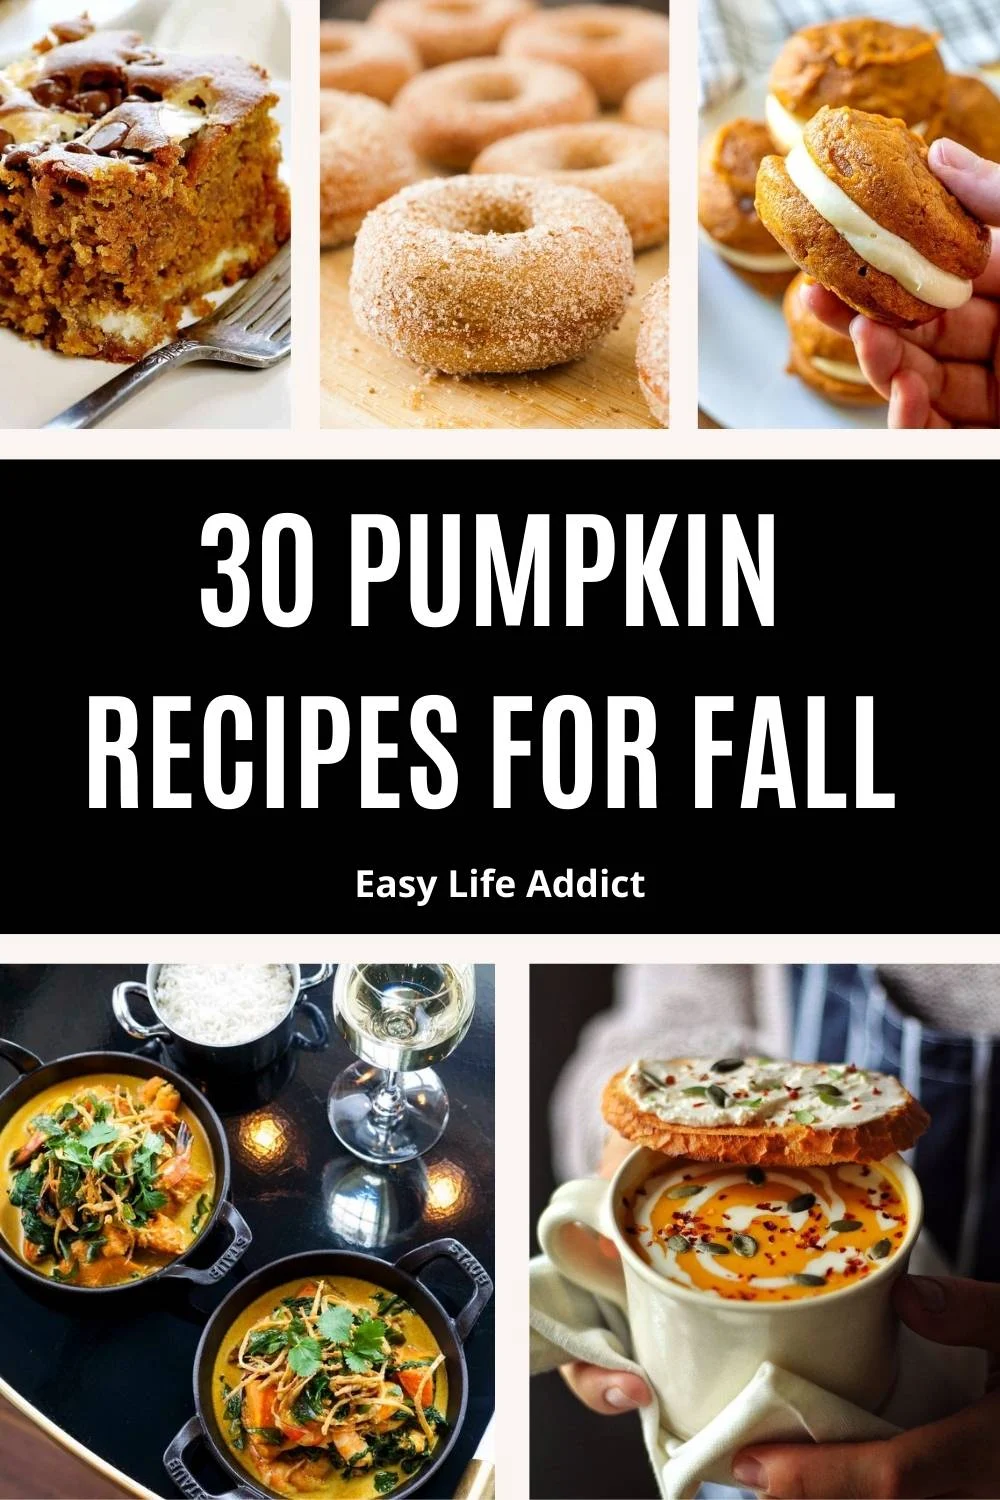 30 Pumpkin recipes for fall